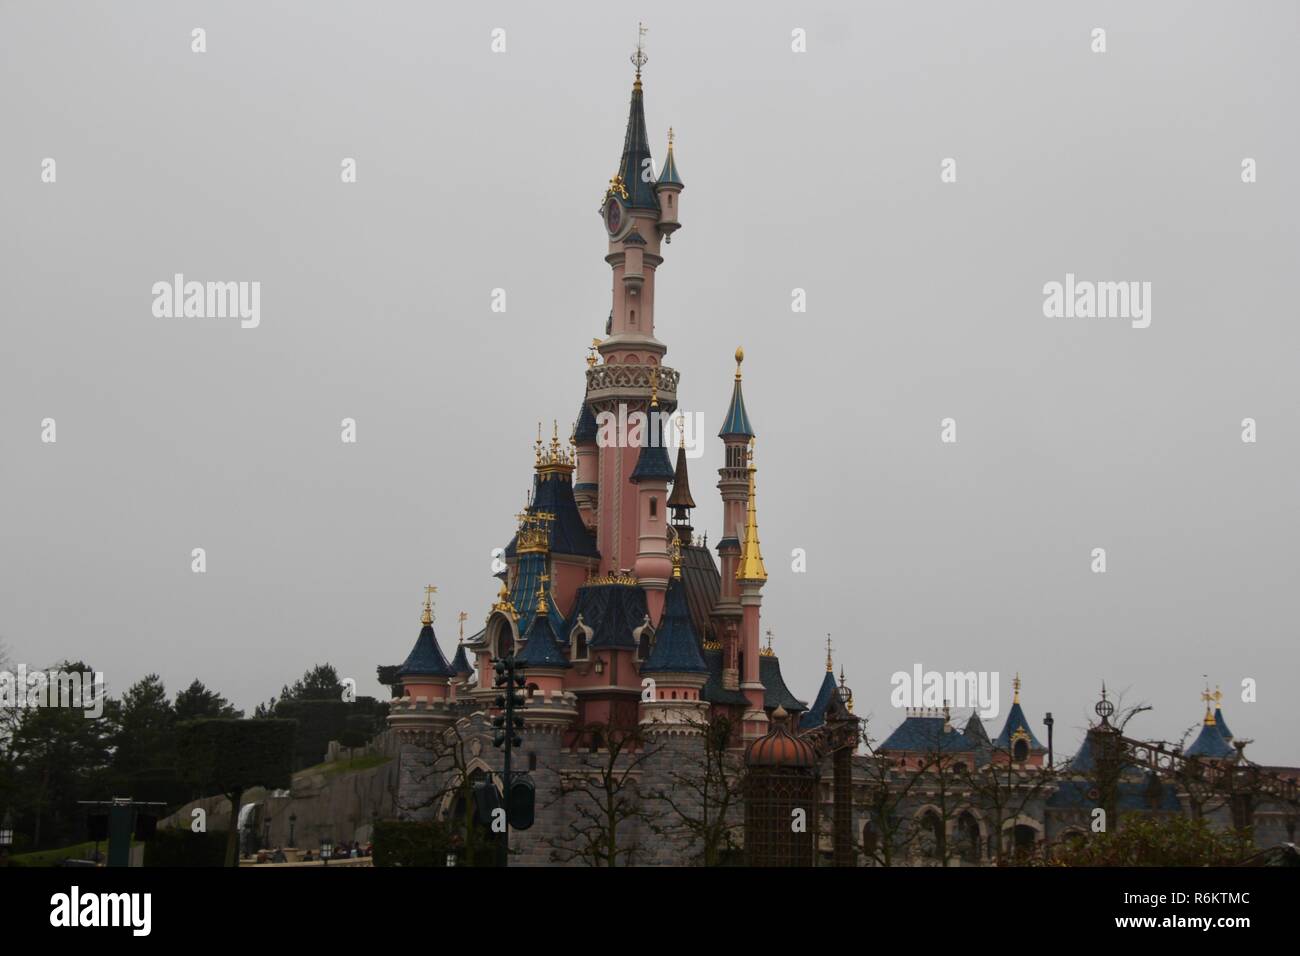 Château de Disney à Disneyland Paris, France Banque D'Images